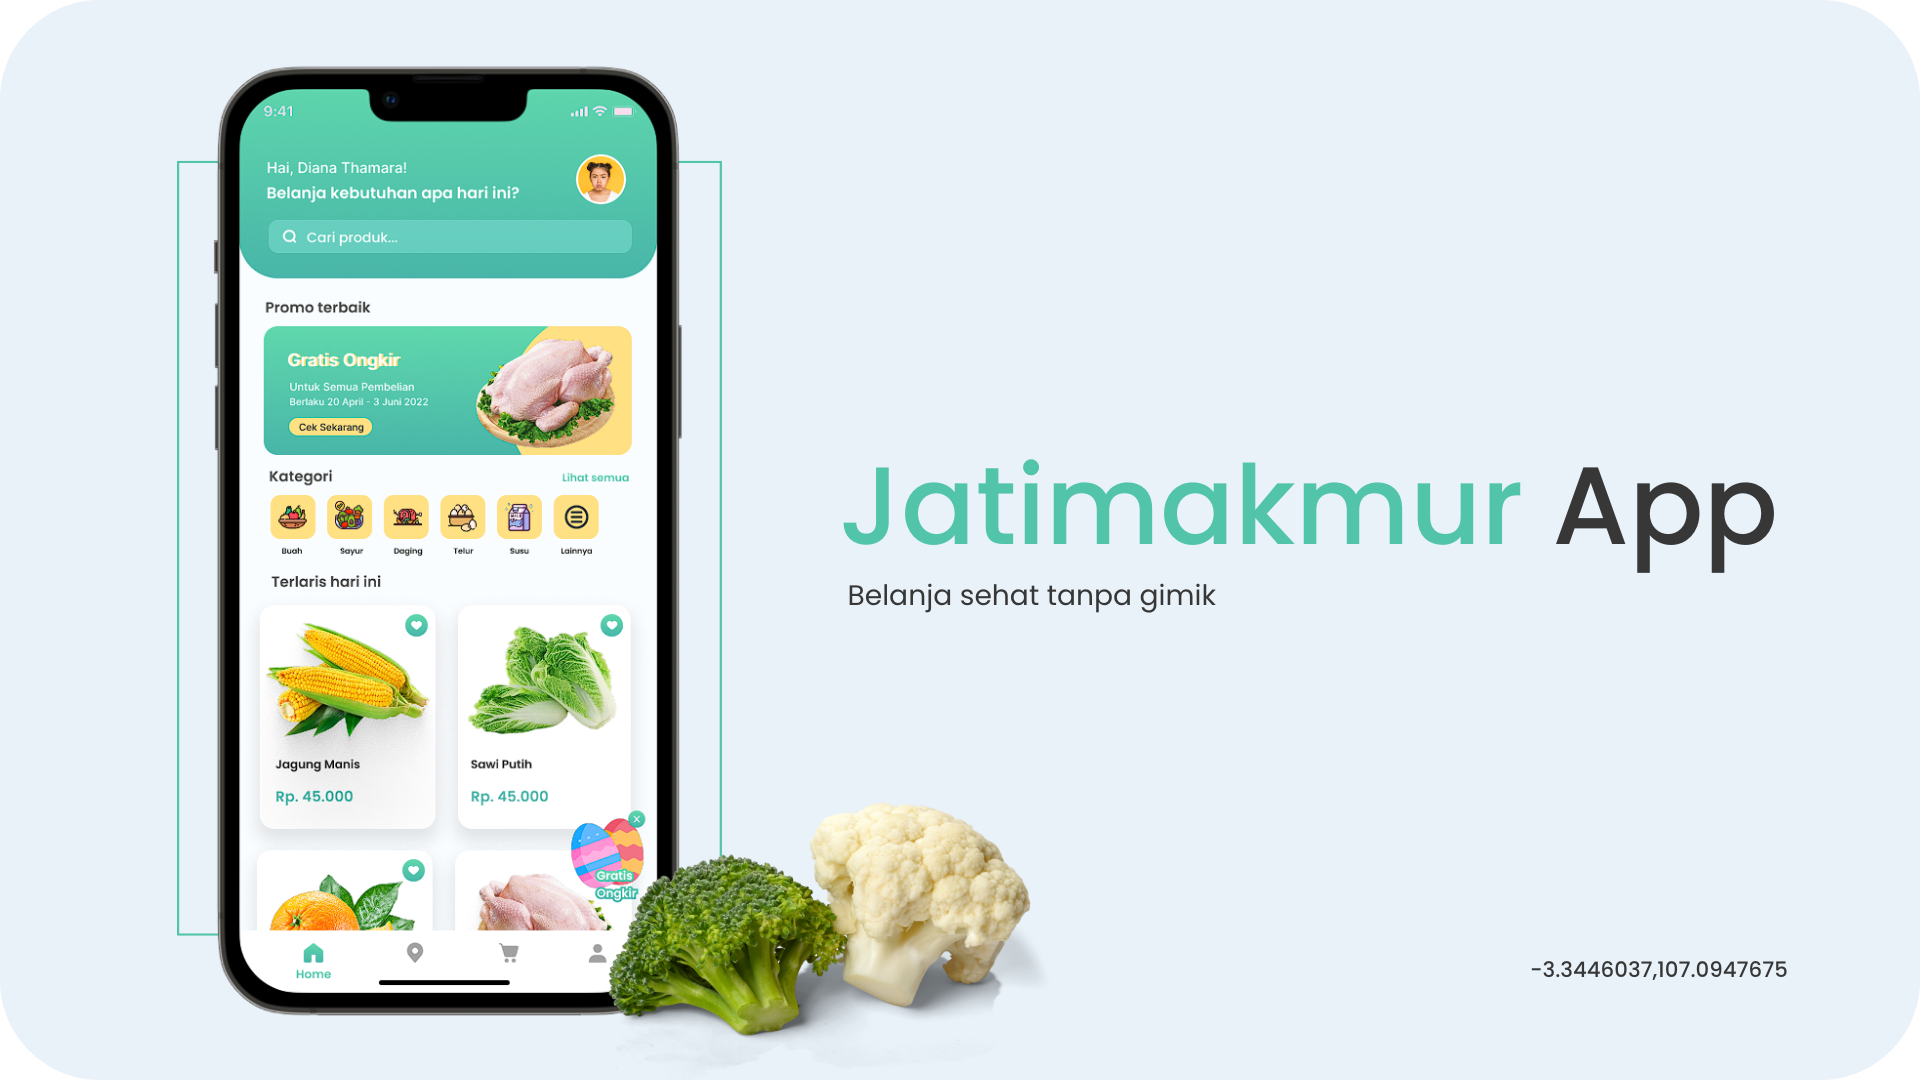 jatimakmur-app